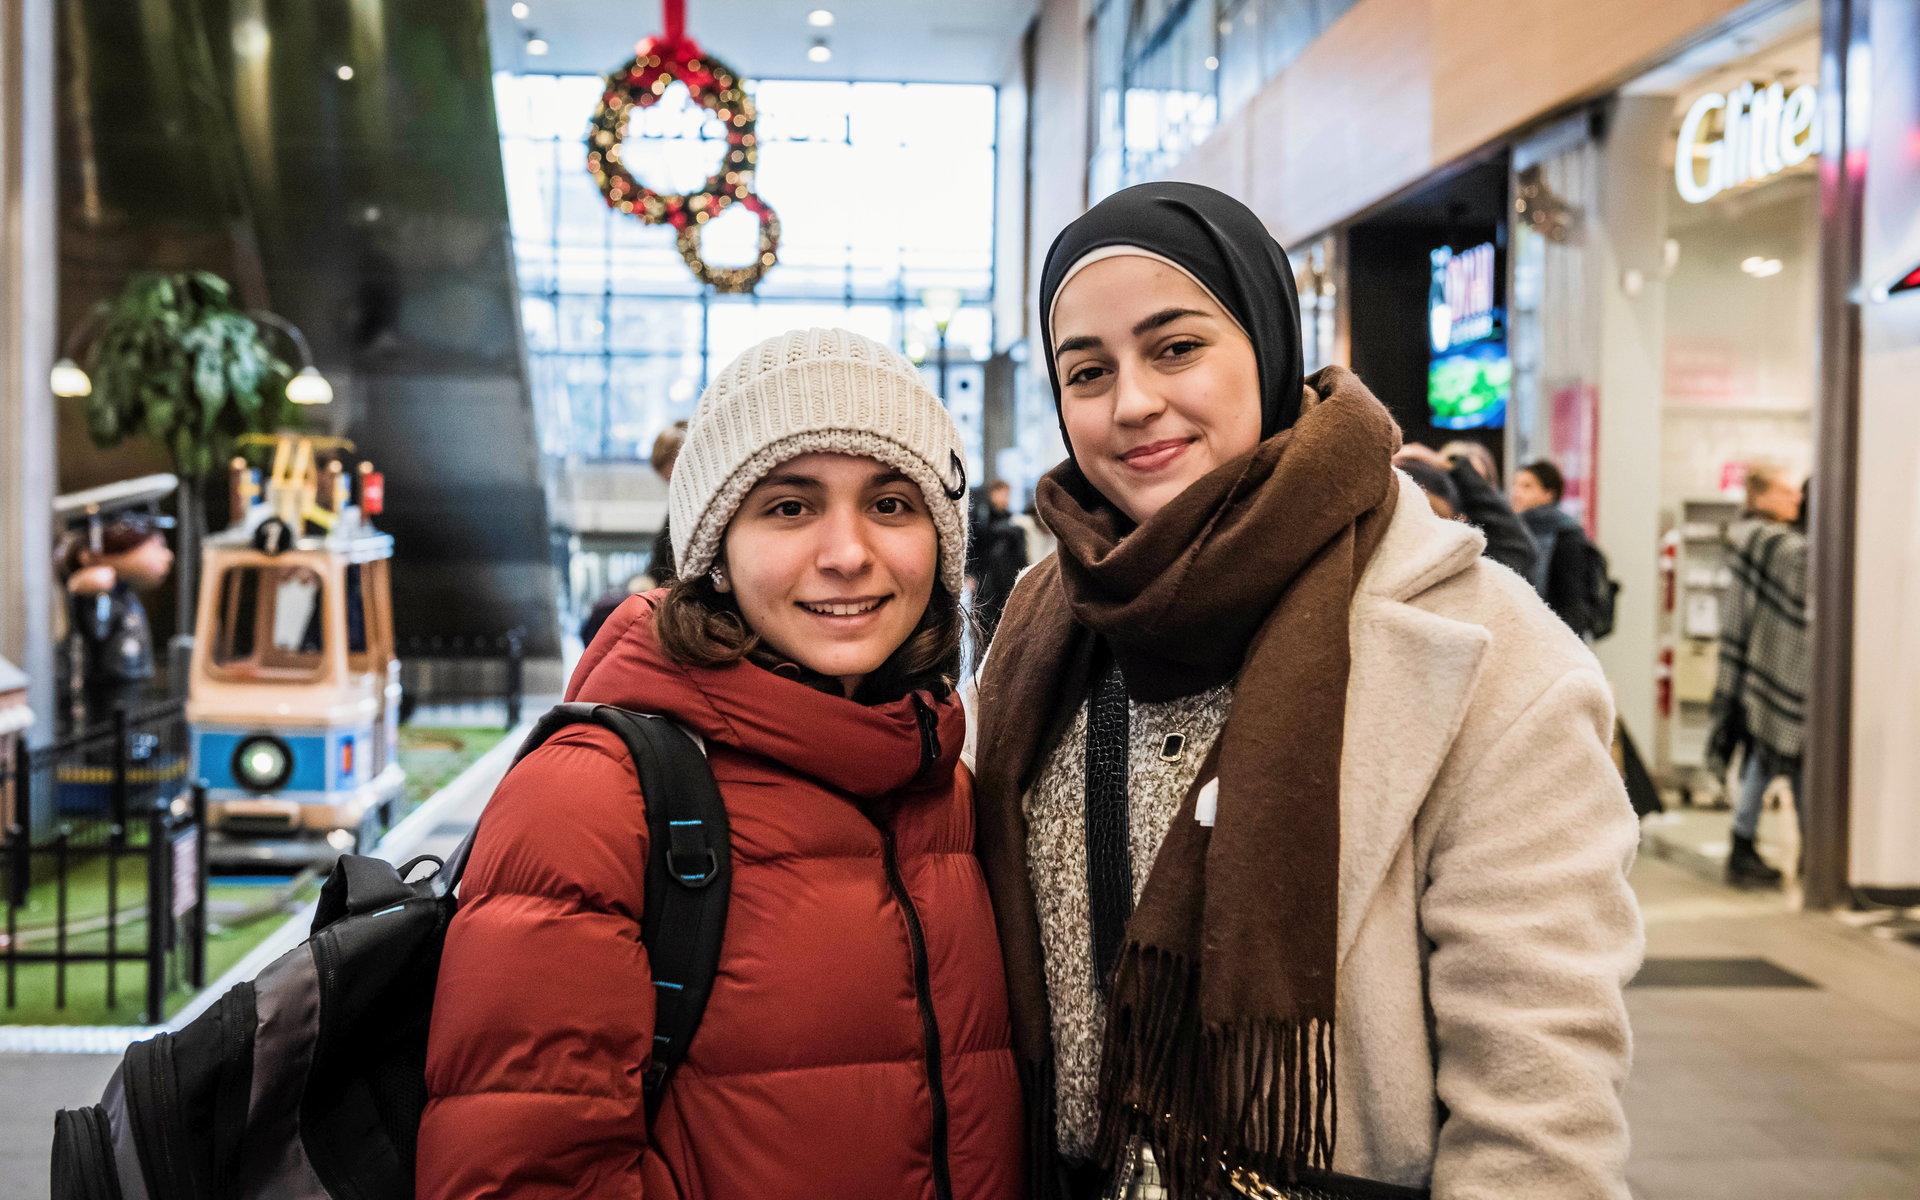 Zina Borghol och Alaa Alserdah kommer från Falköping och hälsade på Nordstans köpcentrum. De tycker många beter sig som innan pandemin bröt ut.